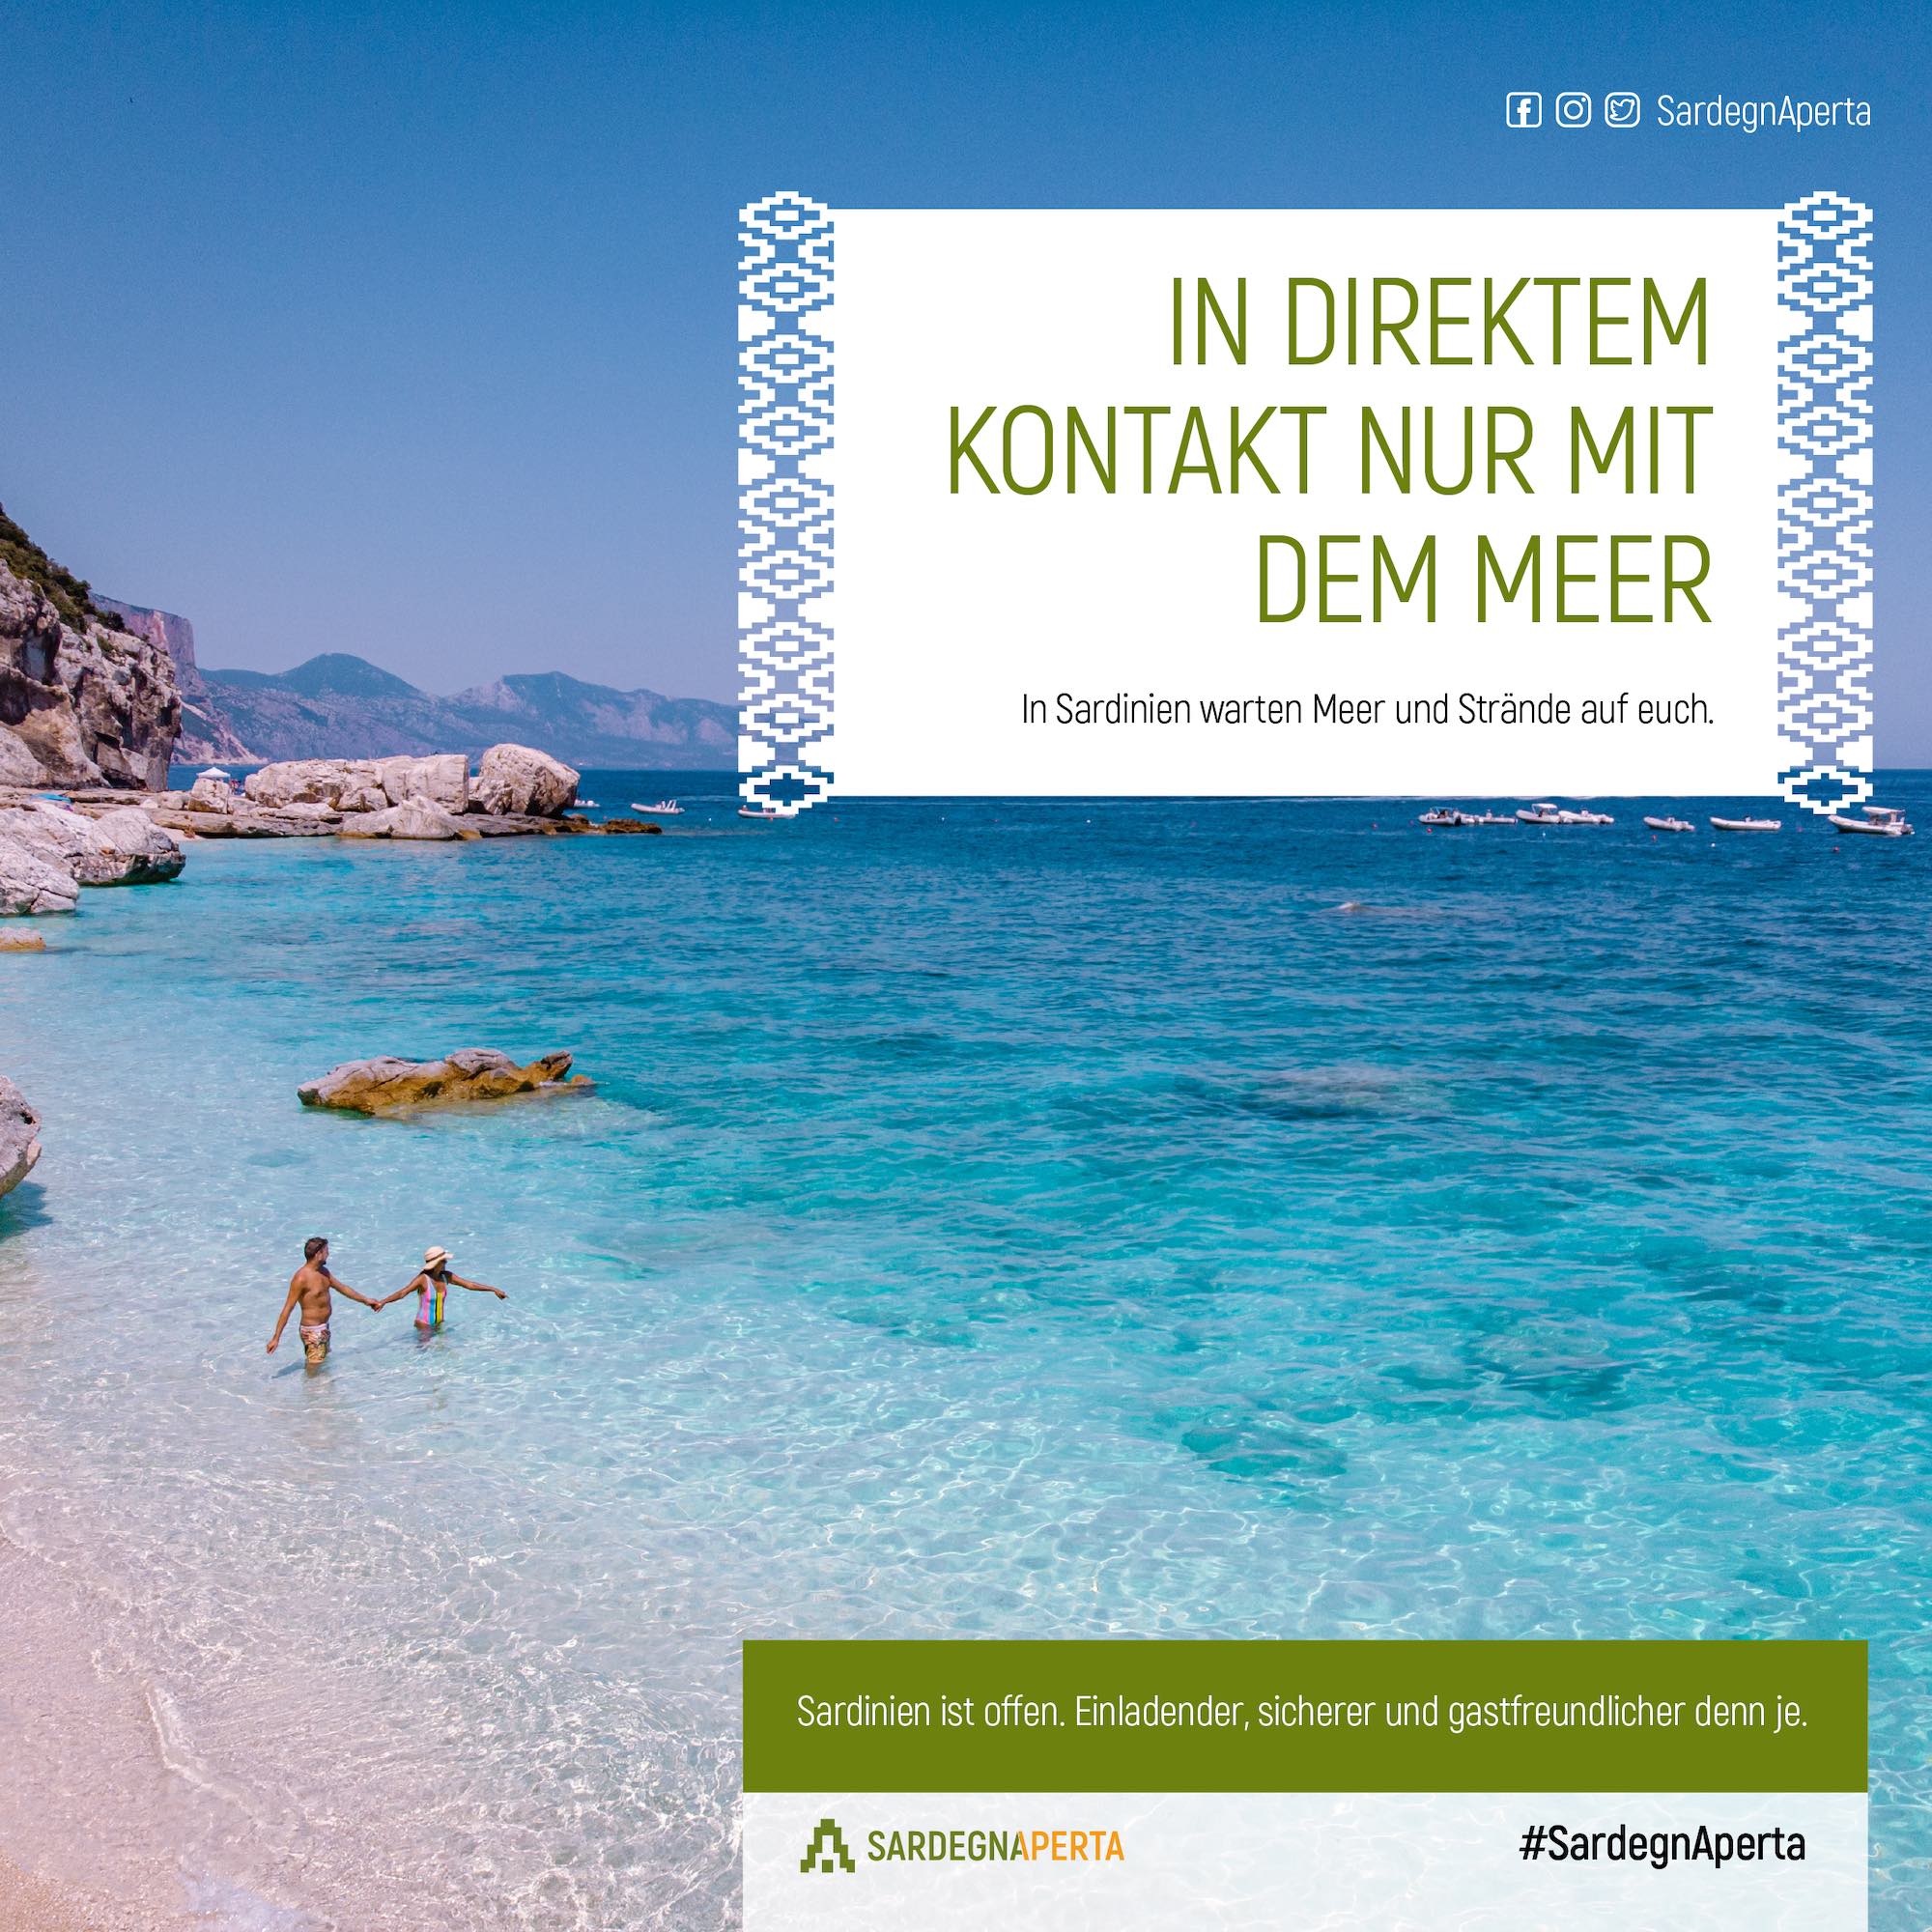 Reisen-Urlaub-123.de - Infos & Tipps rund um's Heimwerken | Kampagne #SardegnAperta